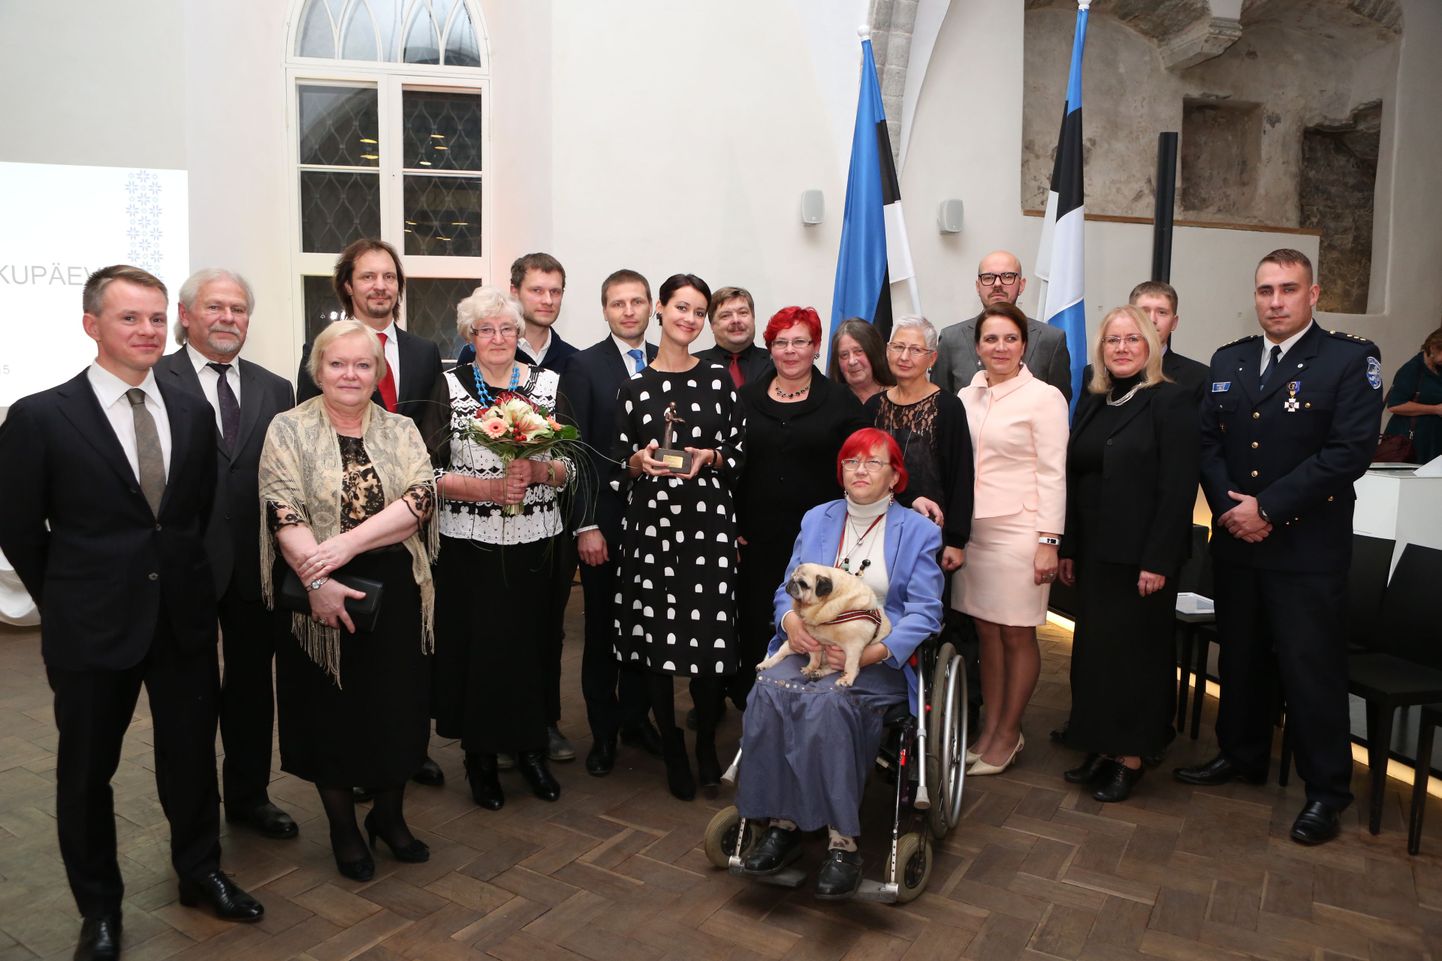 Kodanikupäeval aumärgiga tunnustatud inimesed koos siseministri Hanno Pevkuri ja kultuuriminister Indrek Saarega.